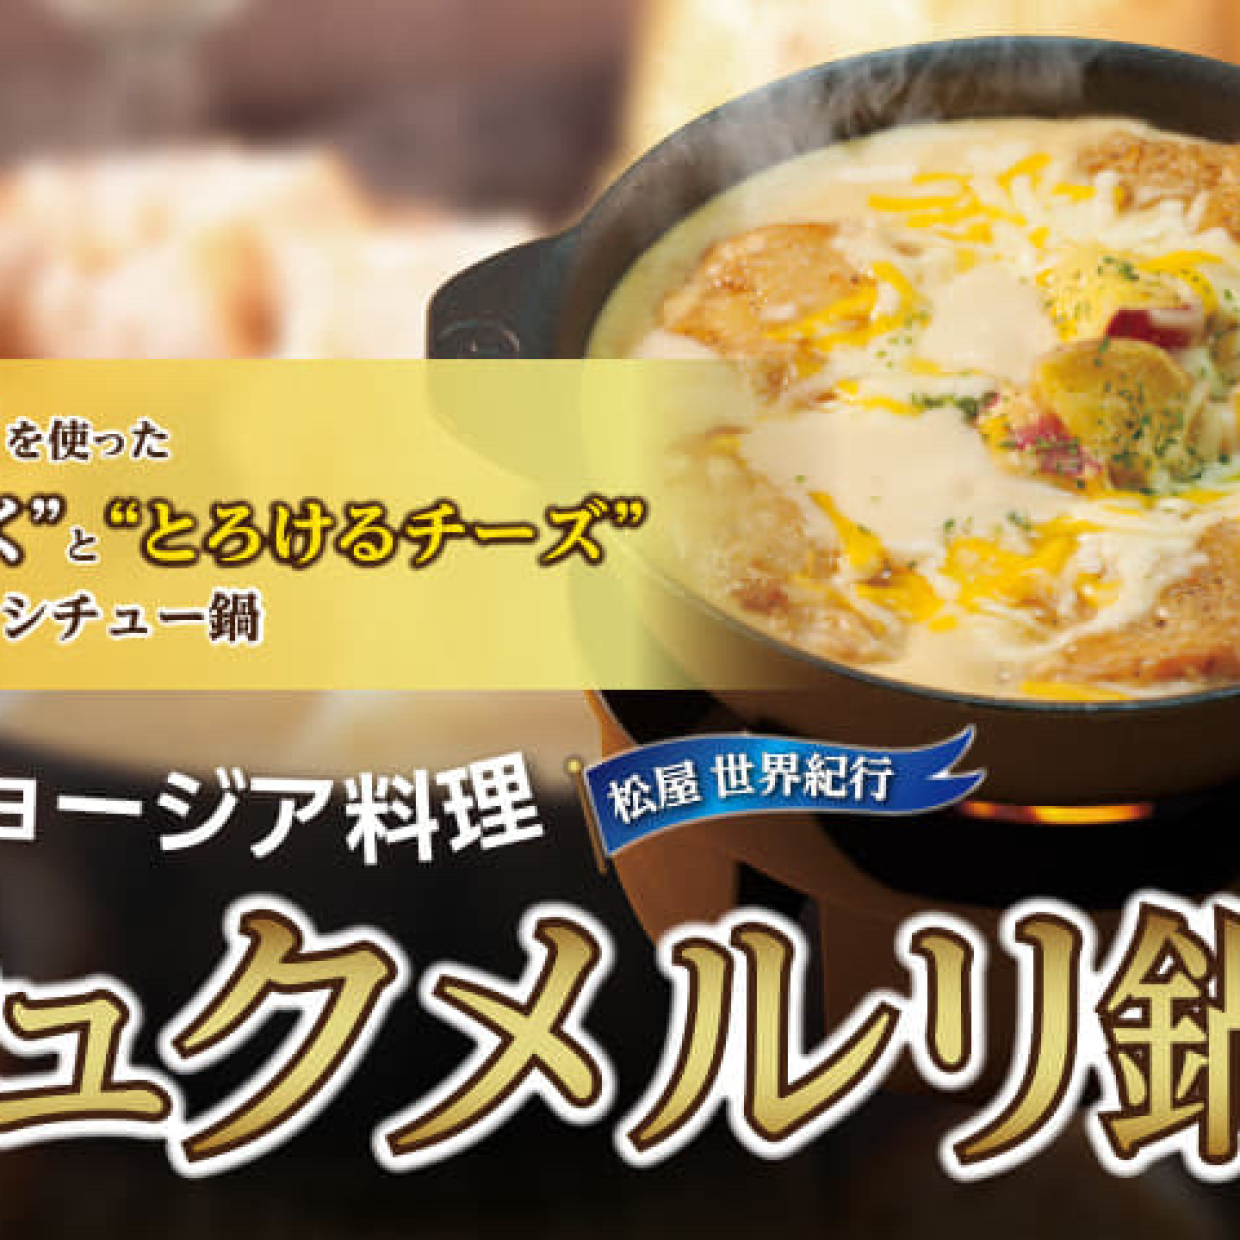  【松屋】ネットで話題になった「シュクメルリ鍋定食」が全国発売スタート！さっそく食べてみたところ… 